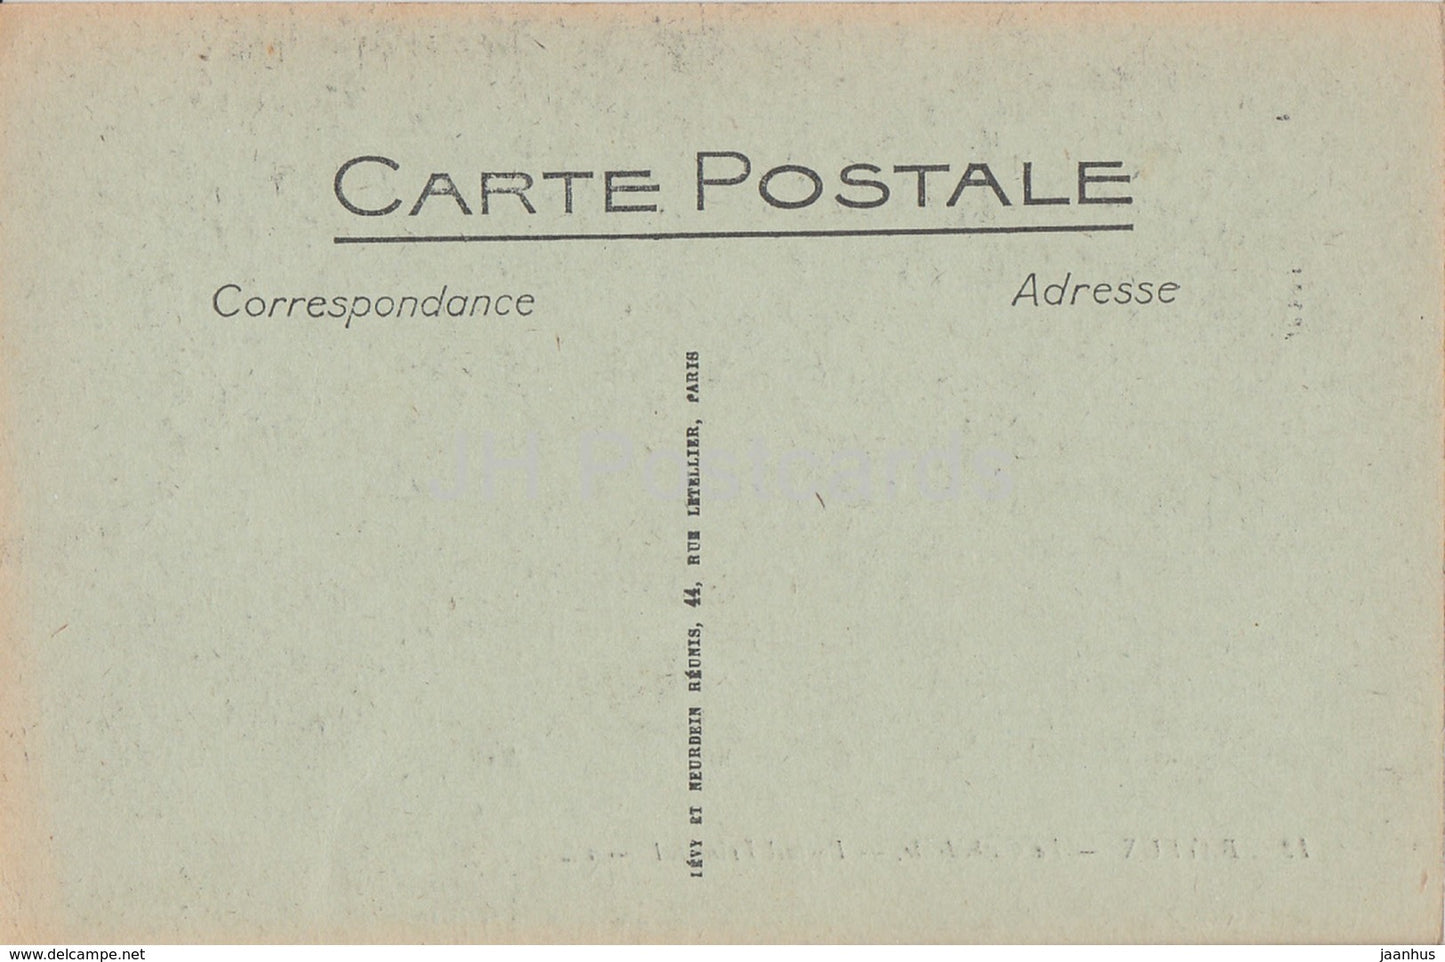 Bayeux - La Cathedrale - Portail Principal - 12 - Kathedrale - alte Postkarte - Frankreich - unbenutzt